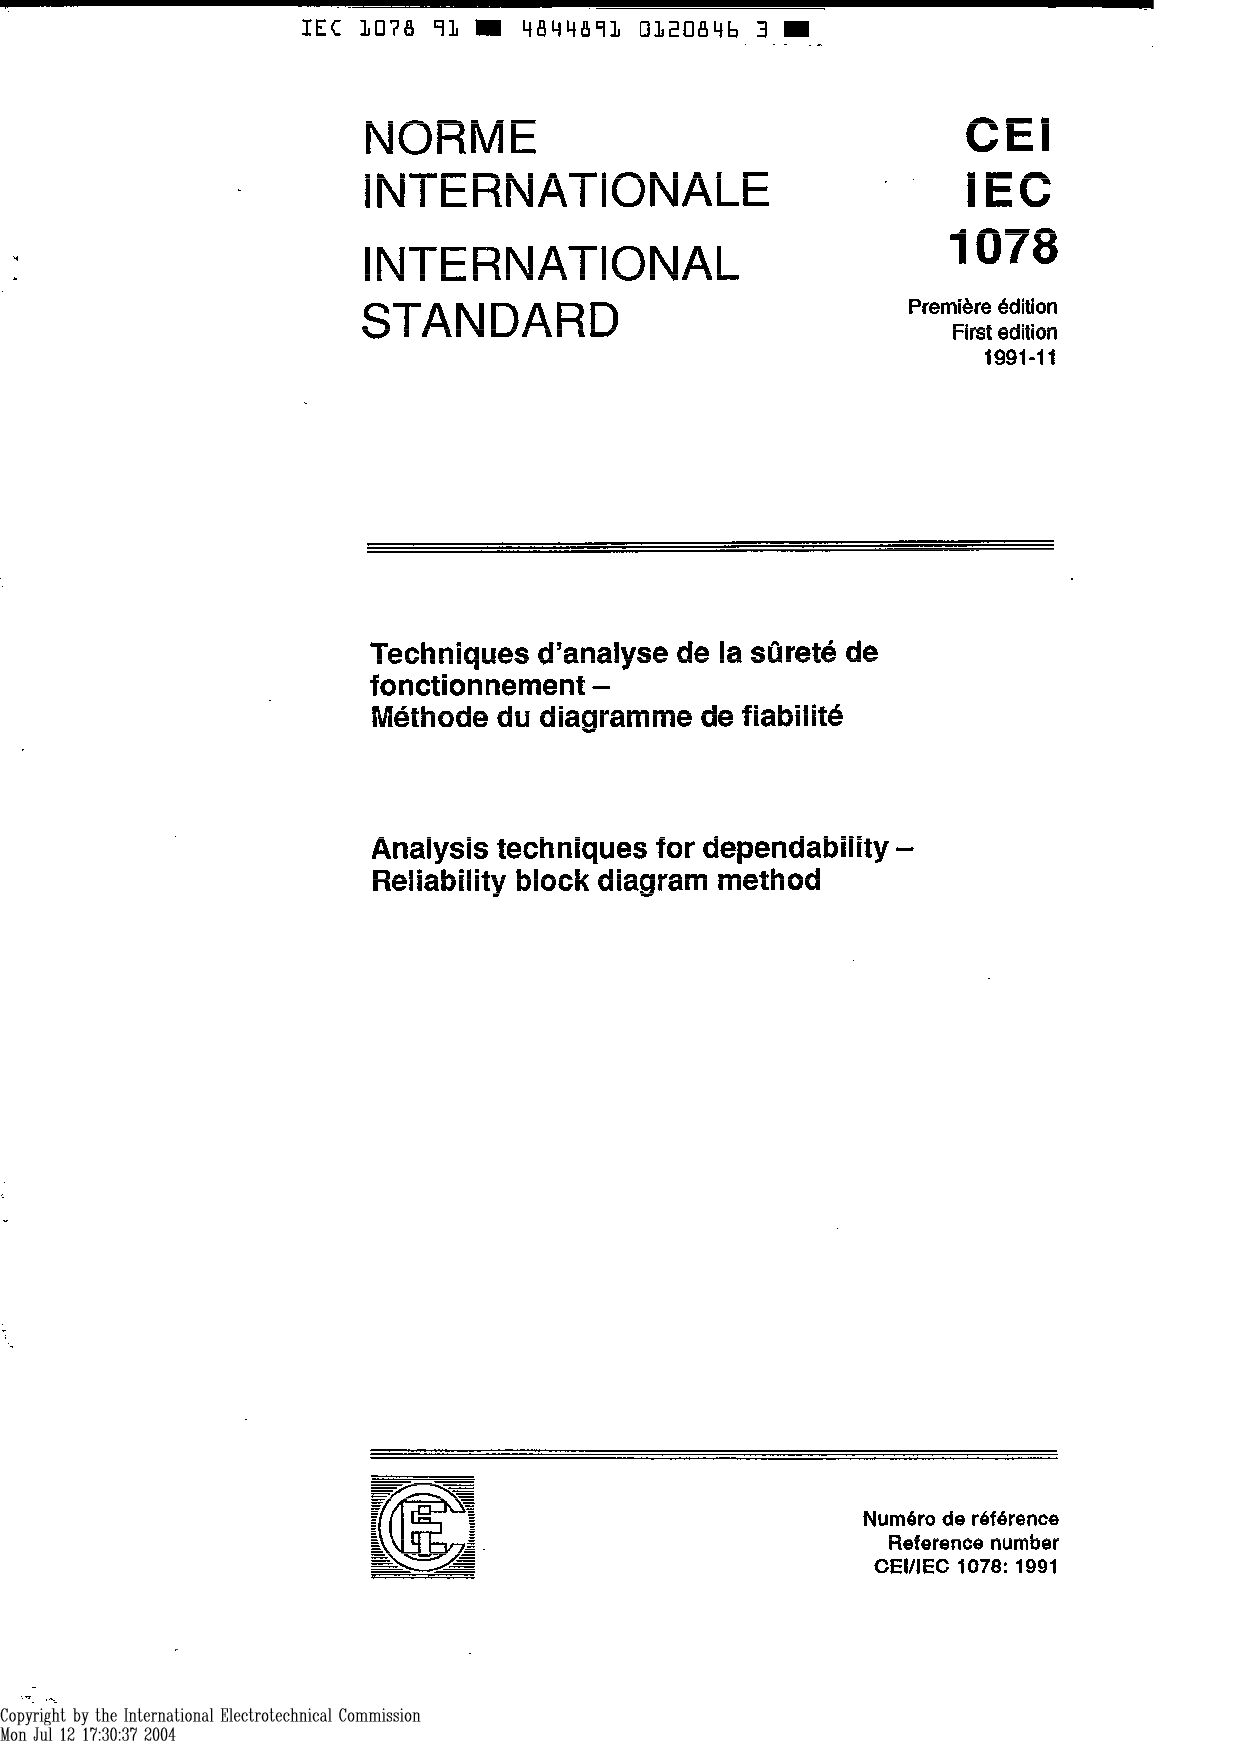 IEC 61078-1991